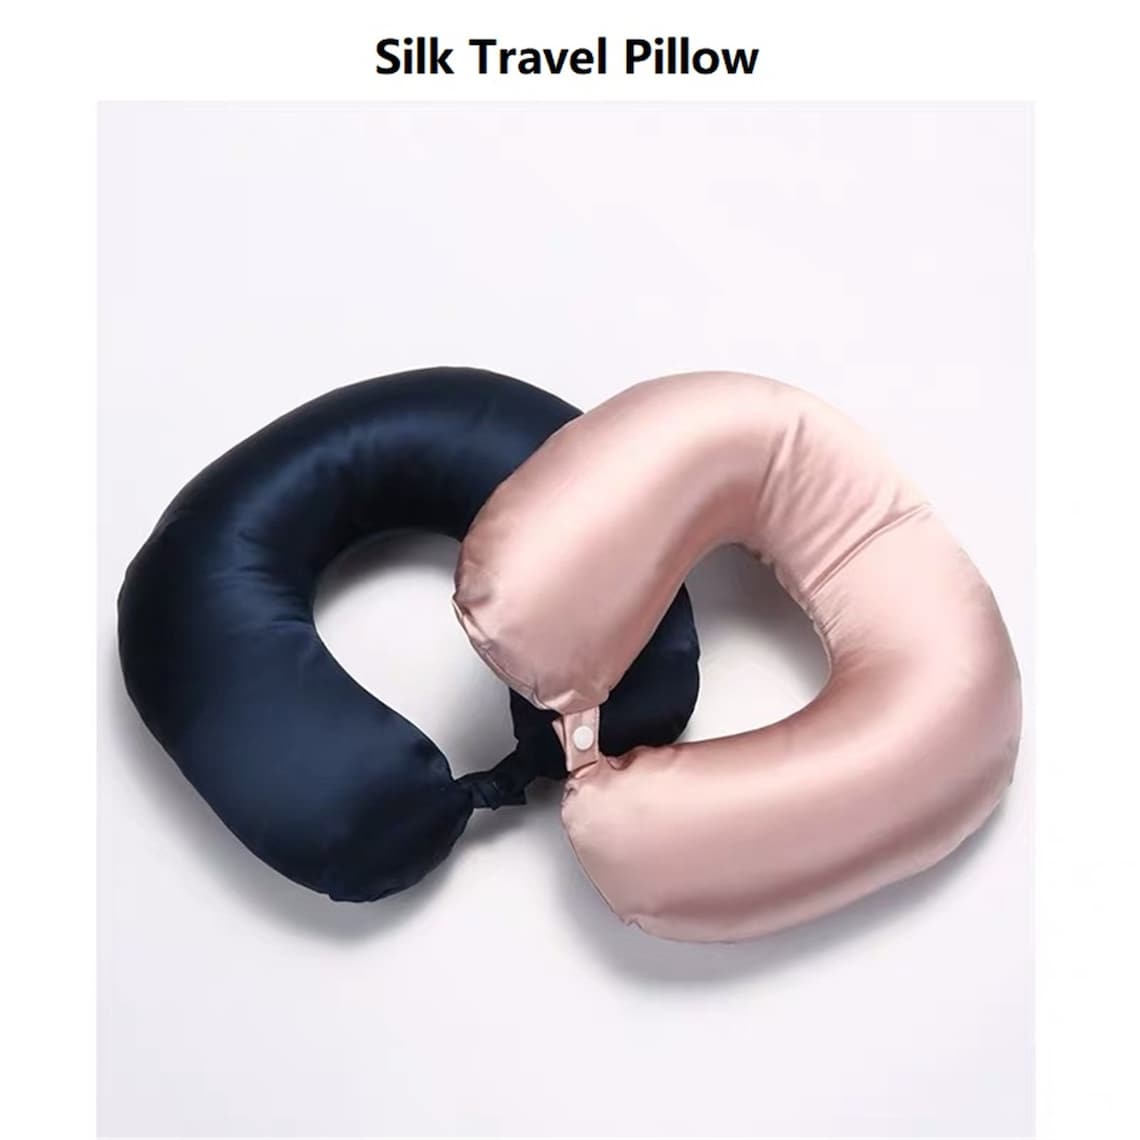 silk travel pillow reviews